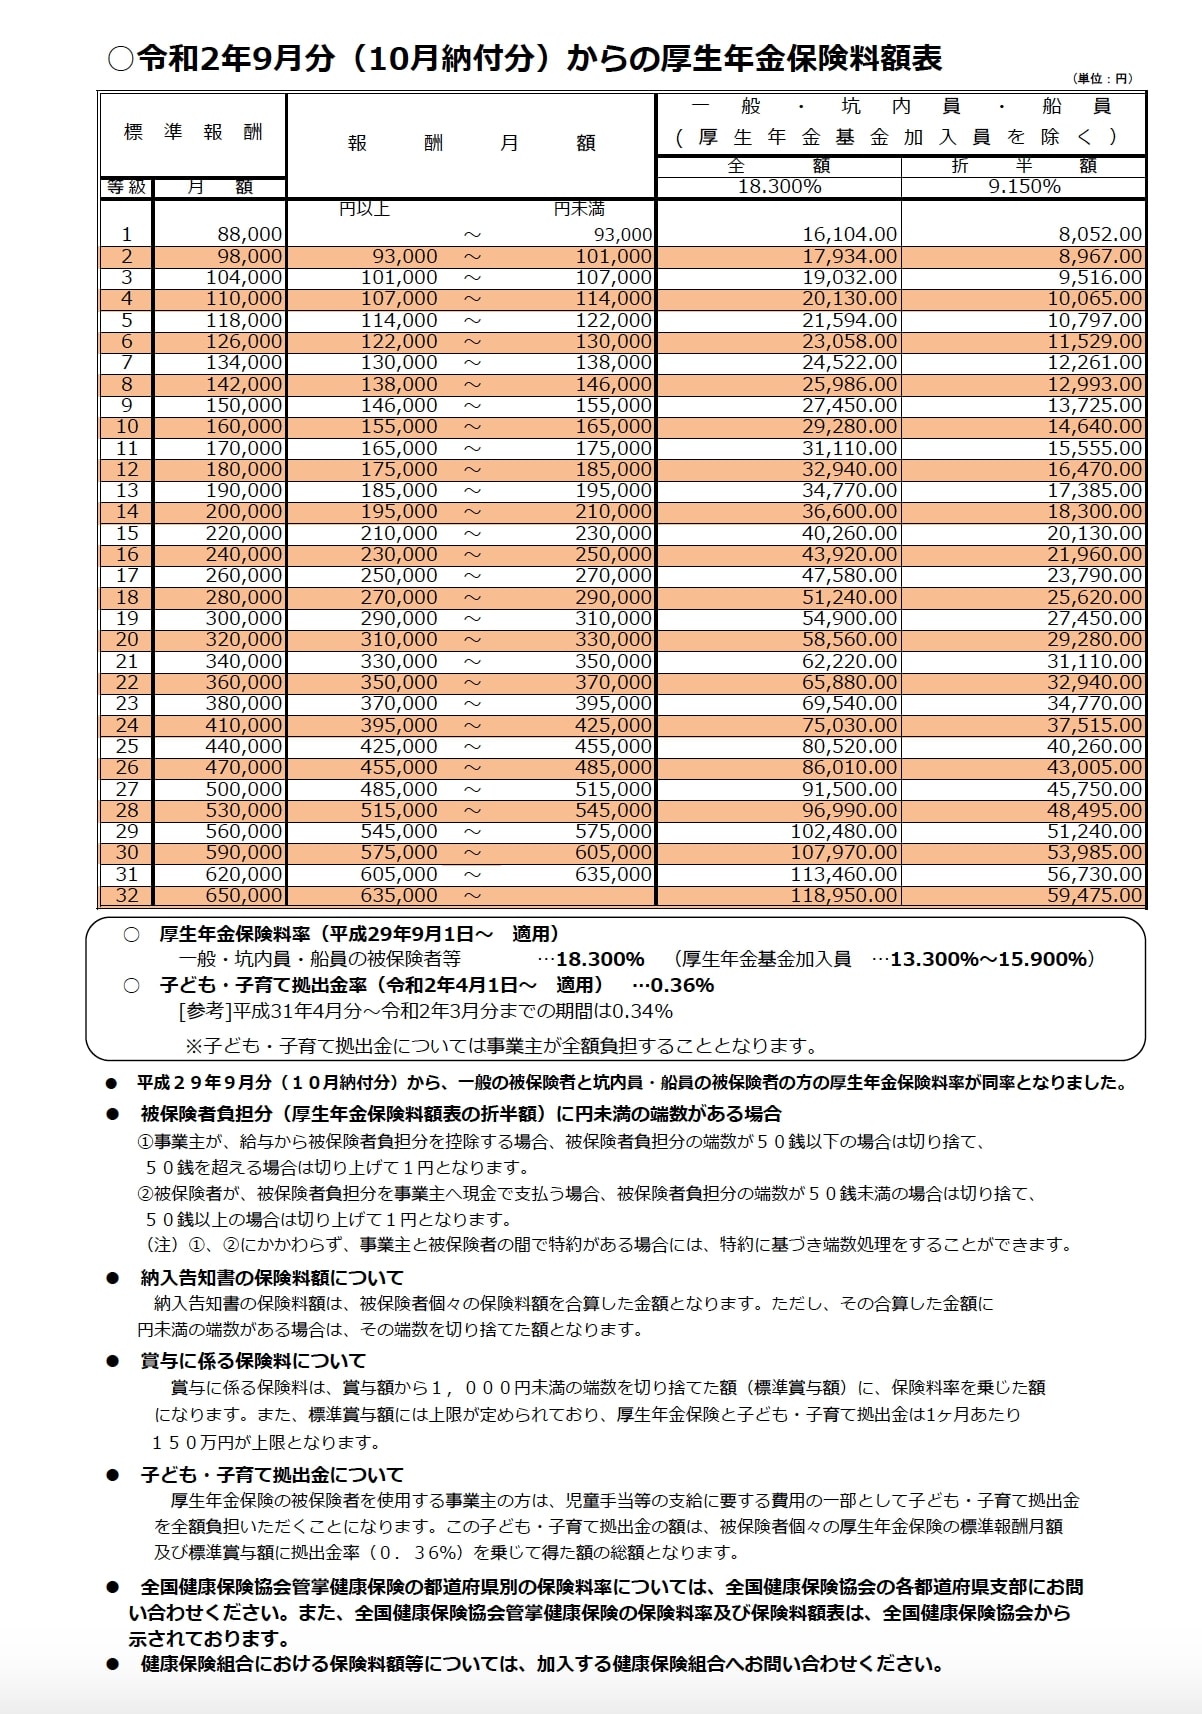 令和2年9月分（10月納品分）からの厚生年金保険料額表